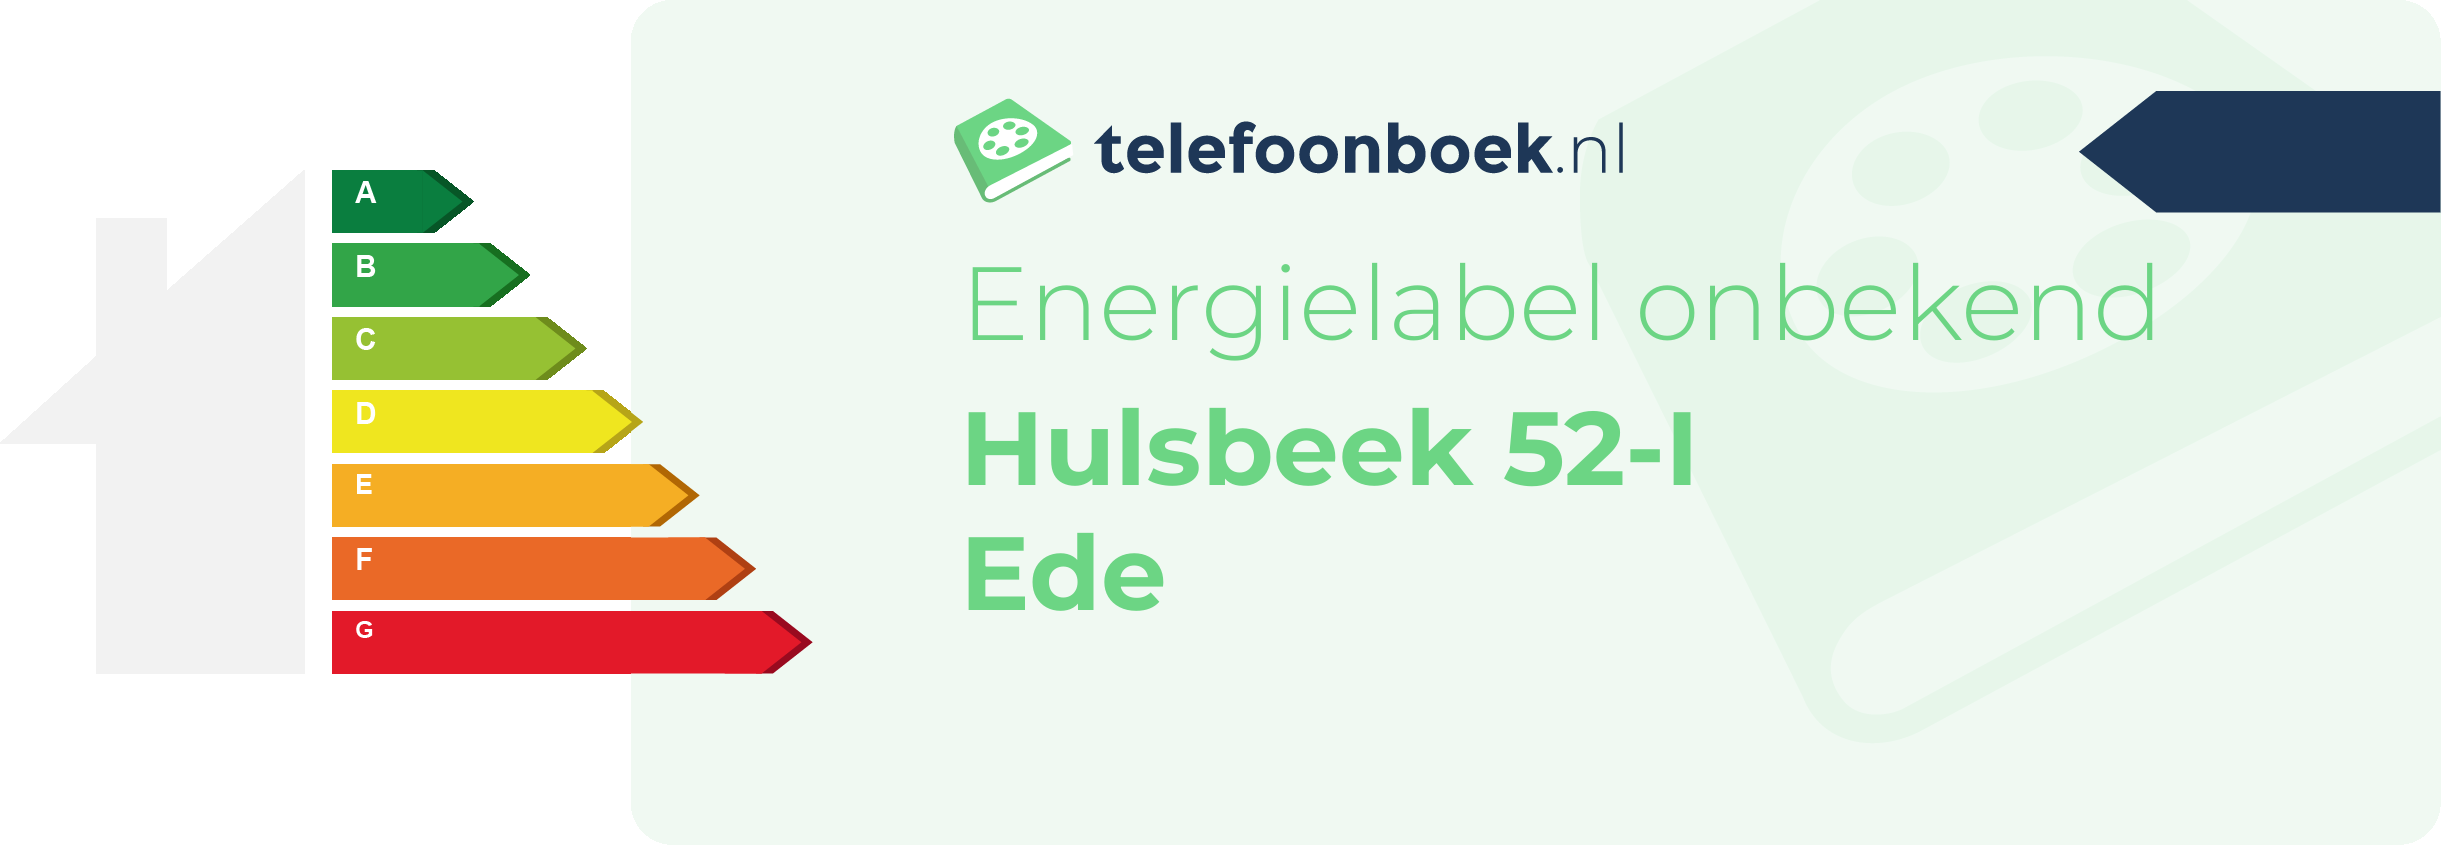 Energielabel Hulsbeek 52-I Ede